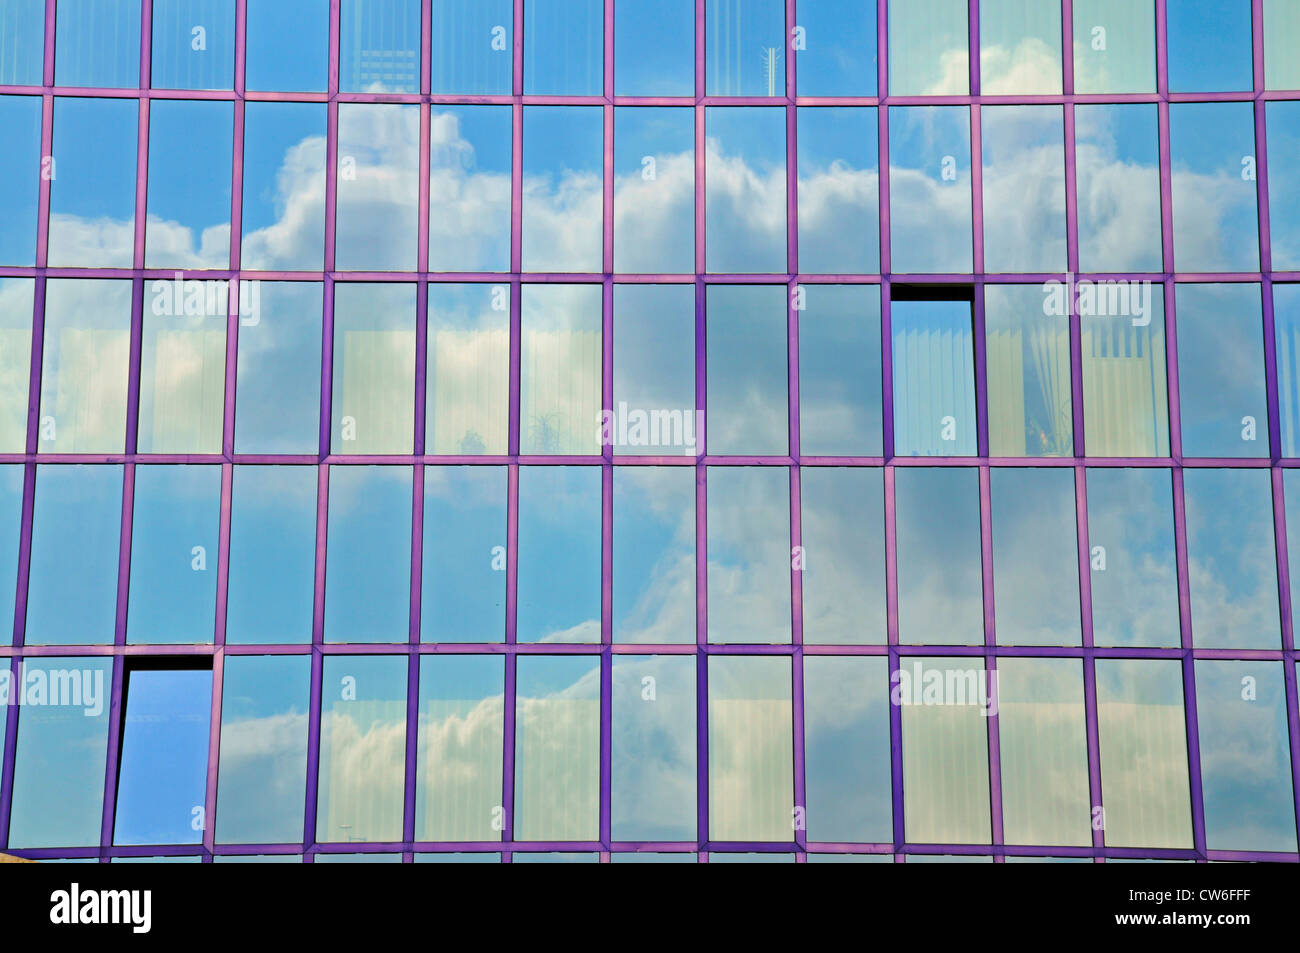 Duplicación de revestimiento de vidrio de un banco, Ulm, Alemania Foto de stock